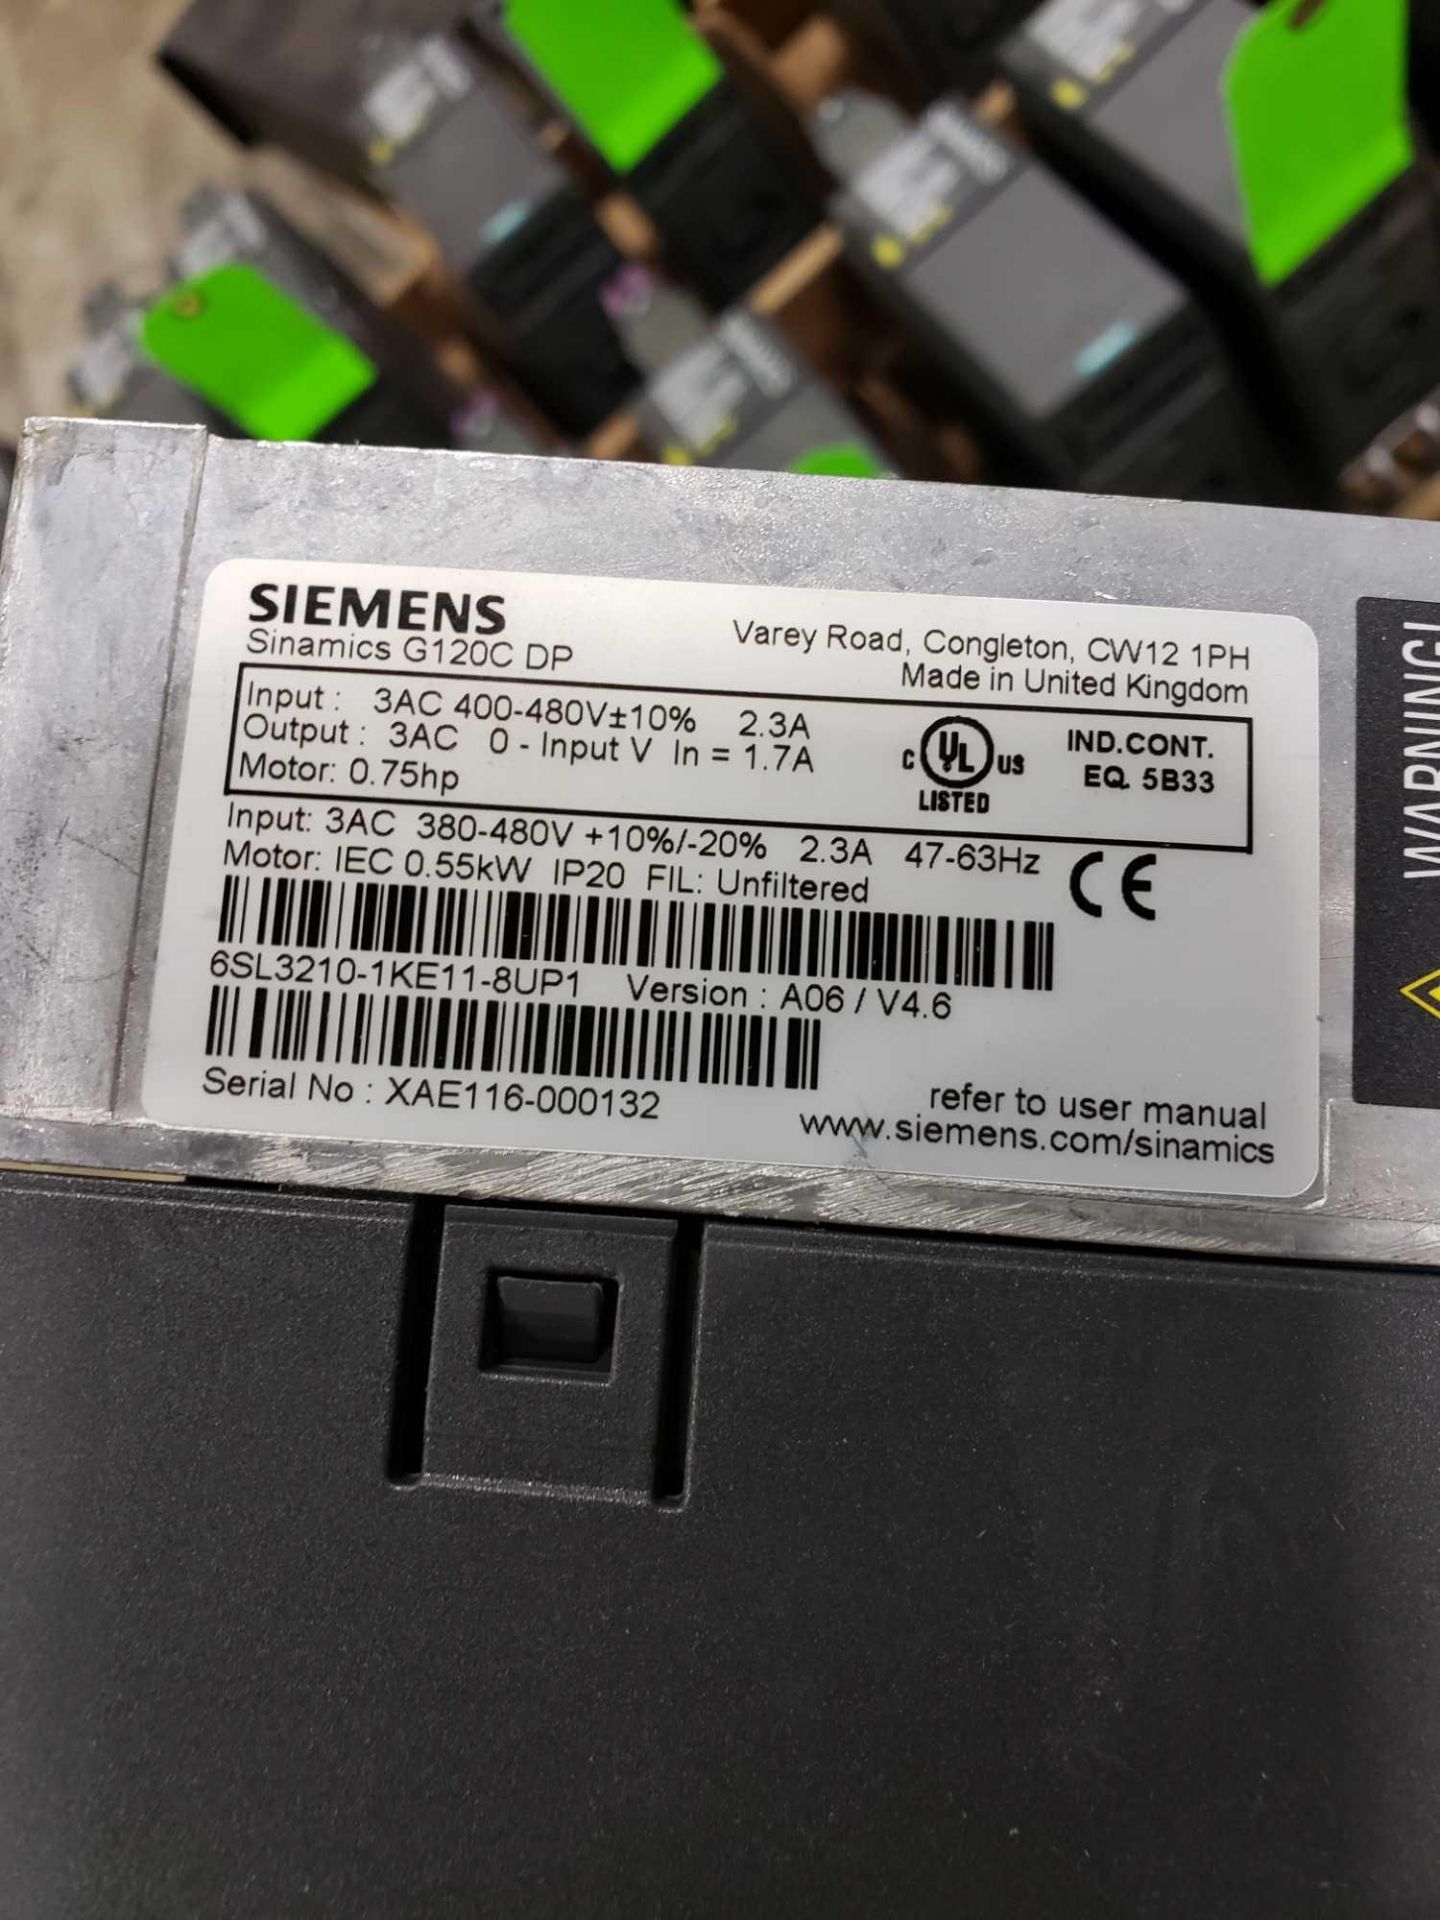 Qty 2 - Siemens Simamics model 6SL3210-1KE11-8UP1. - Image 2 of 2